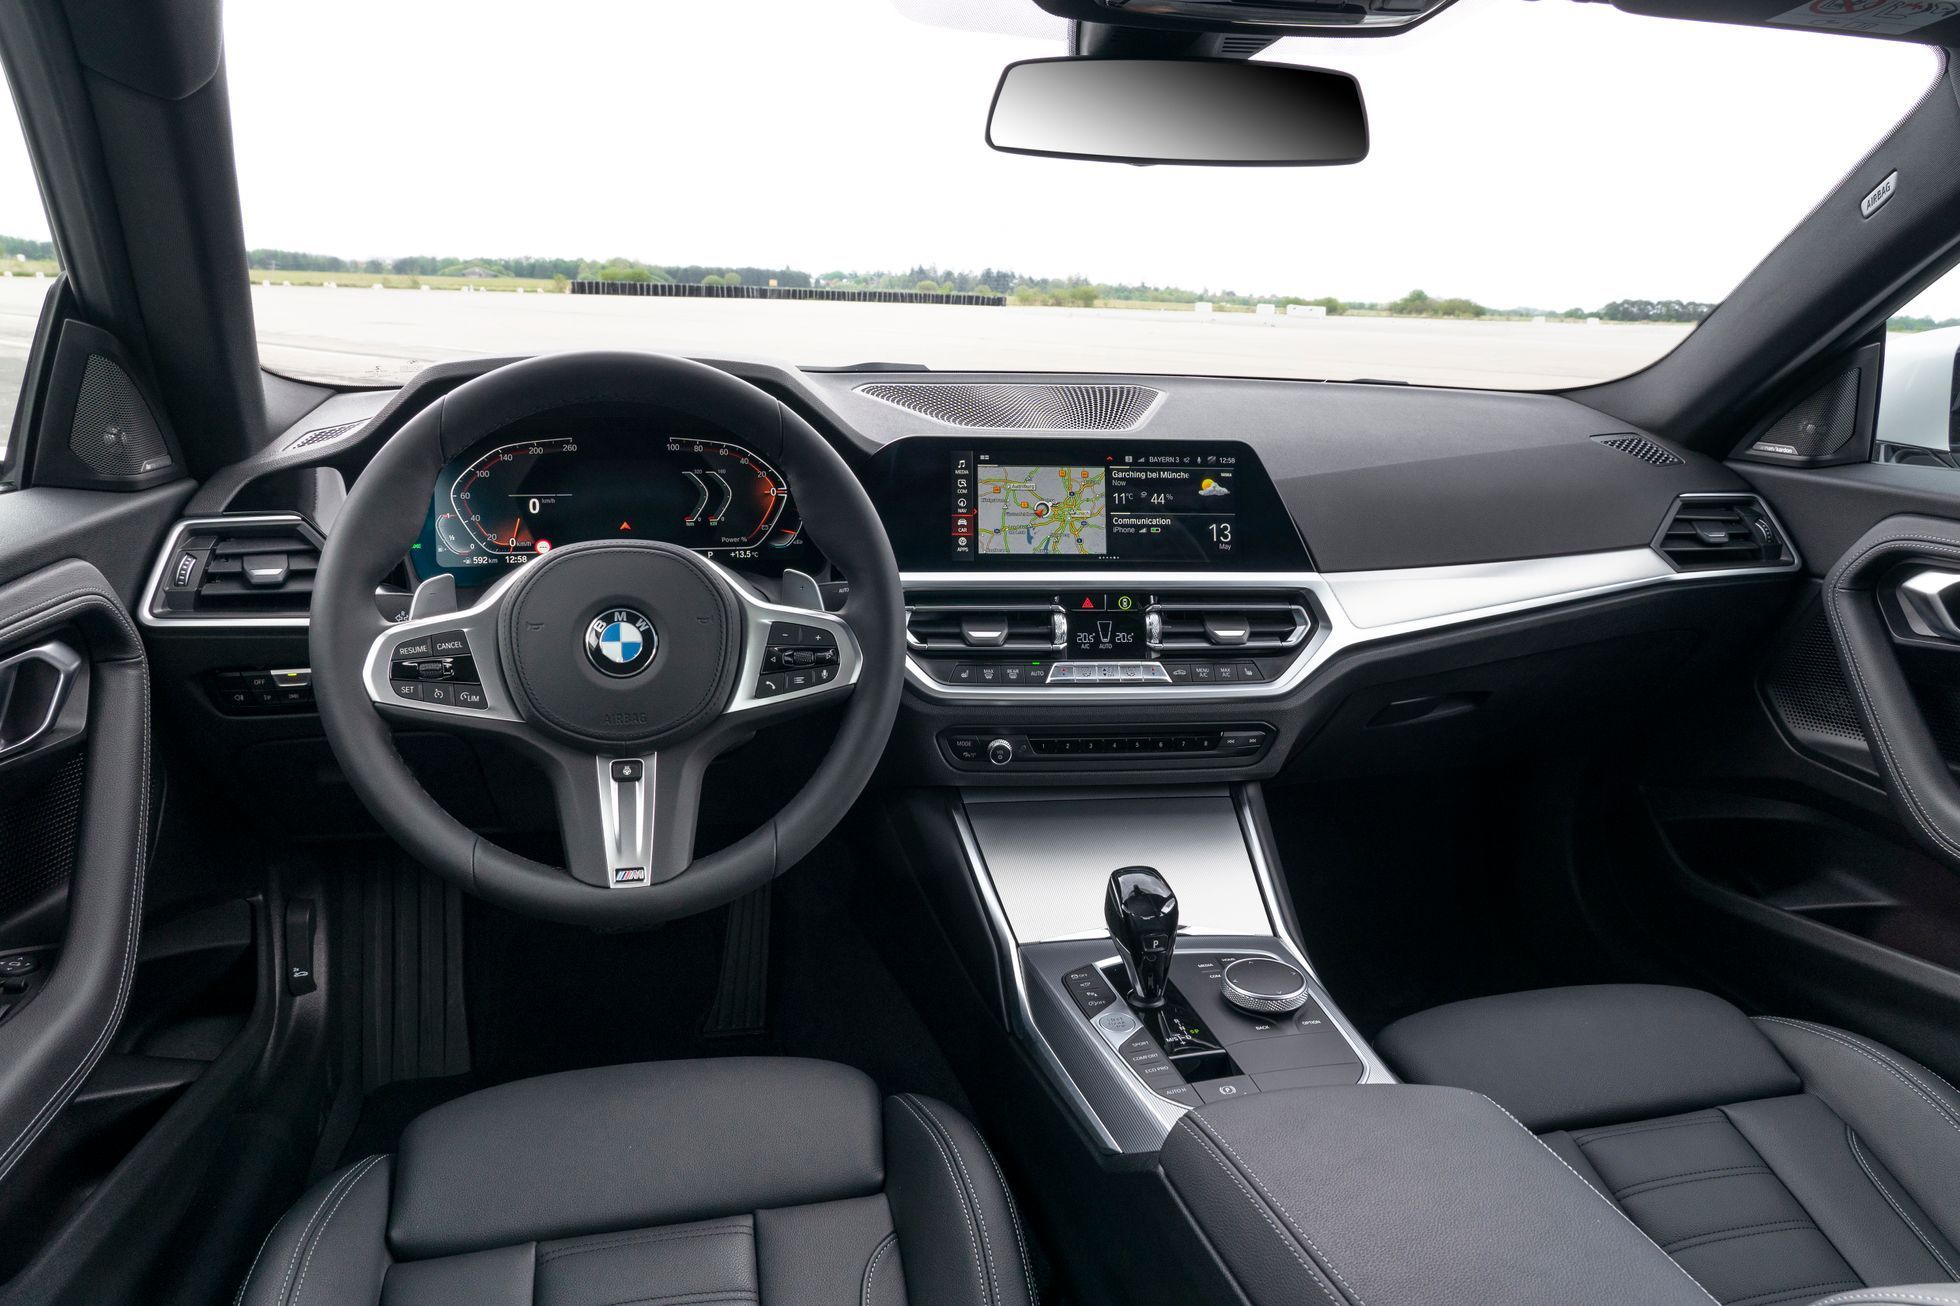 BMW řady 2 Coupé nová generace